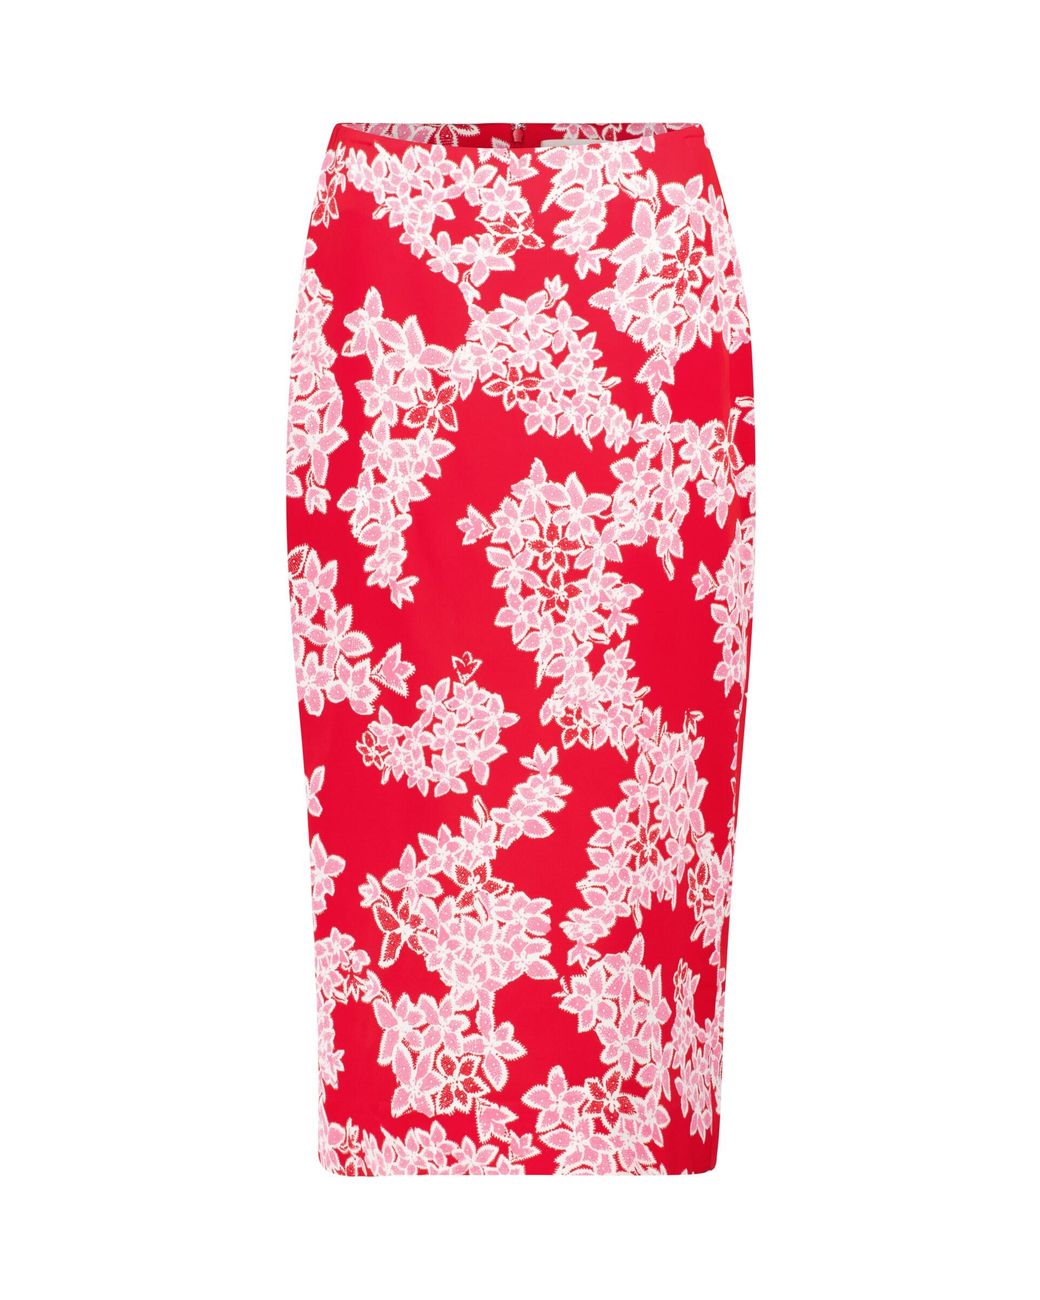 Diane von Furstenberg Kara Floral Cady Pencil Skirt in Red | Lyst